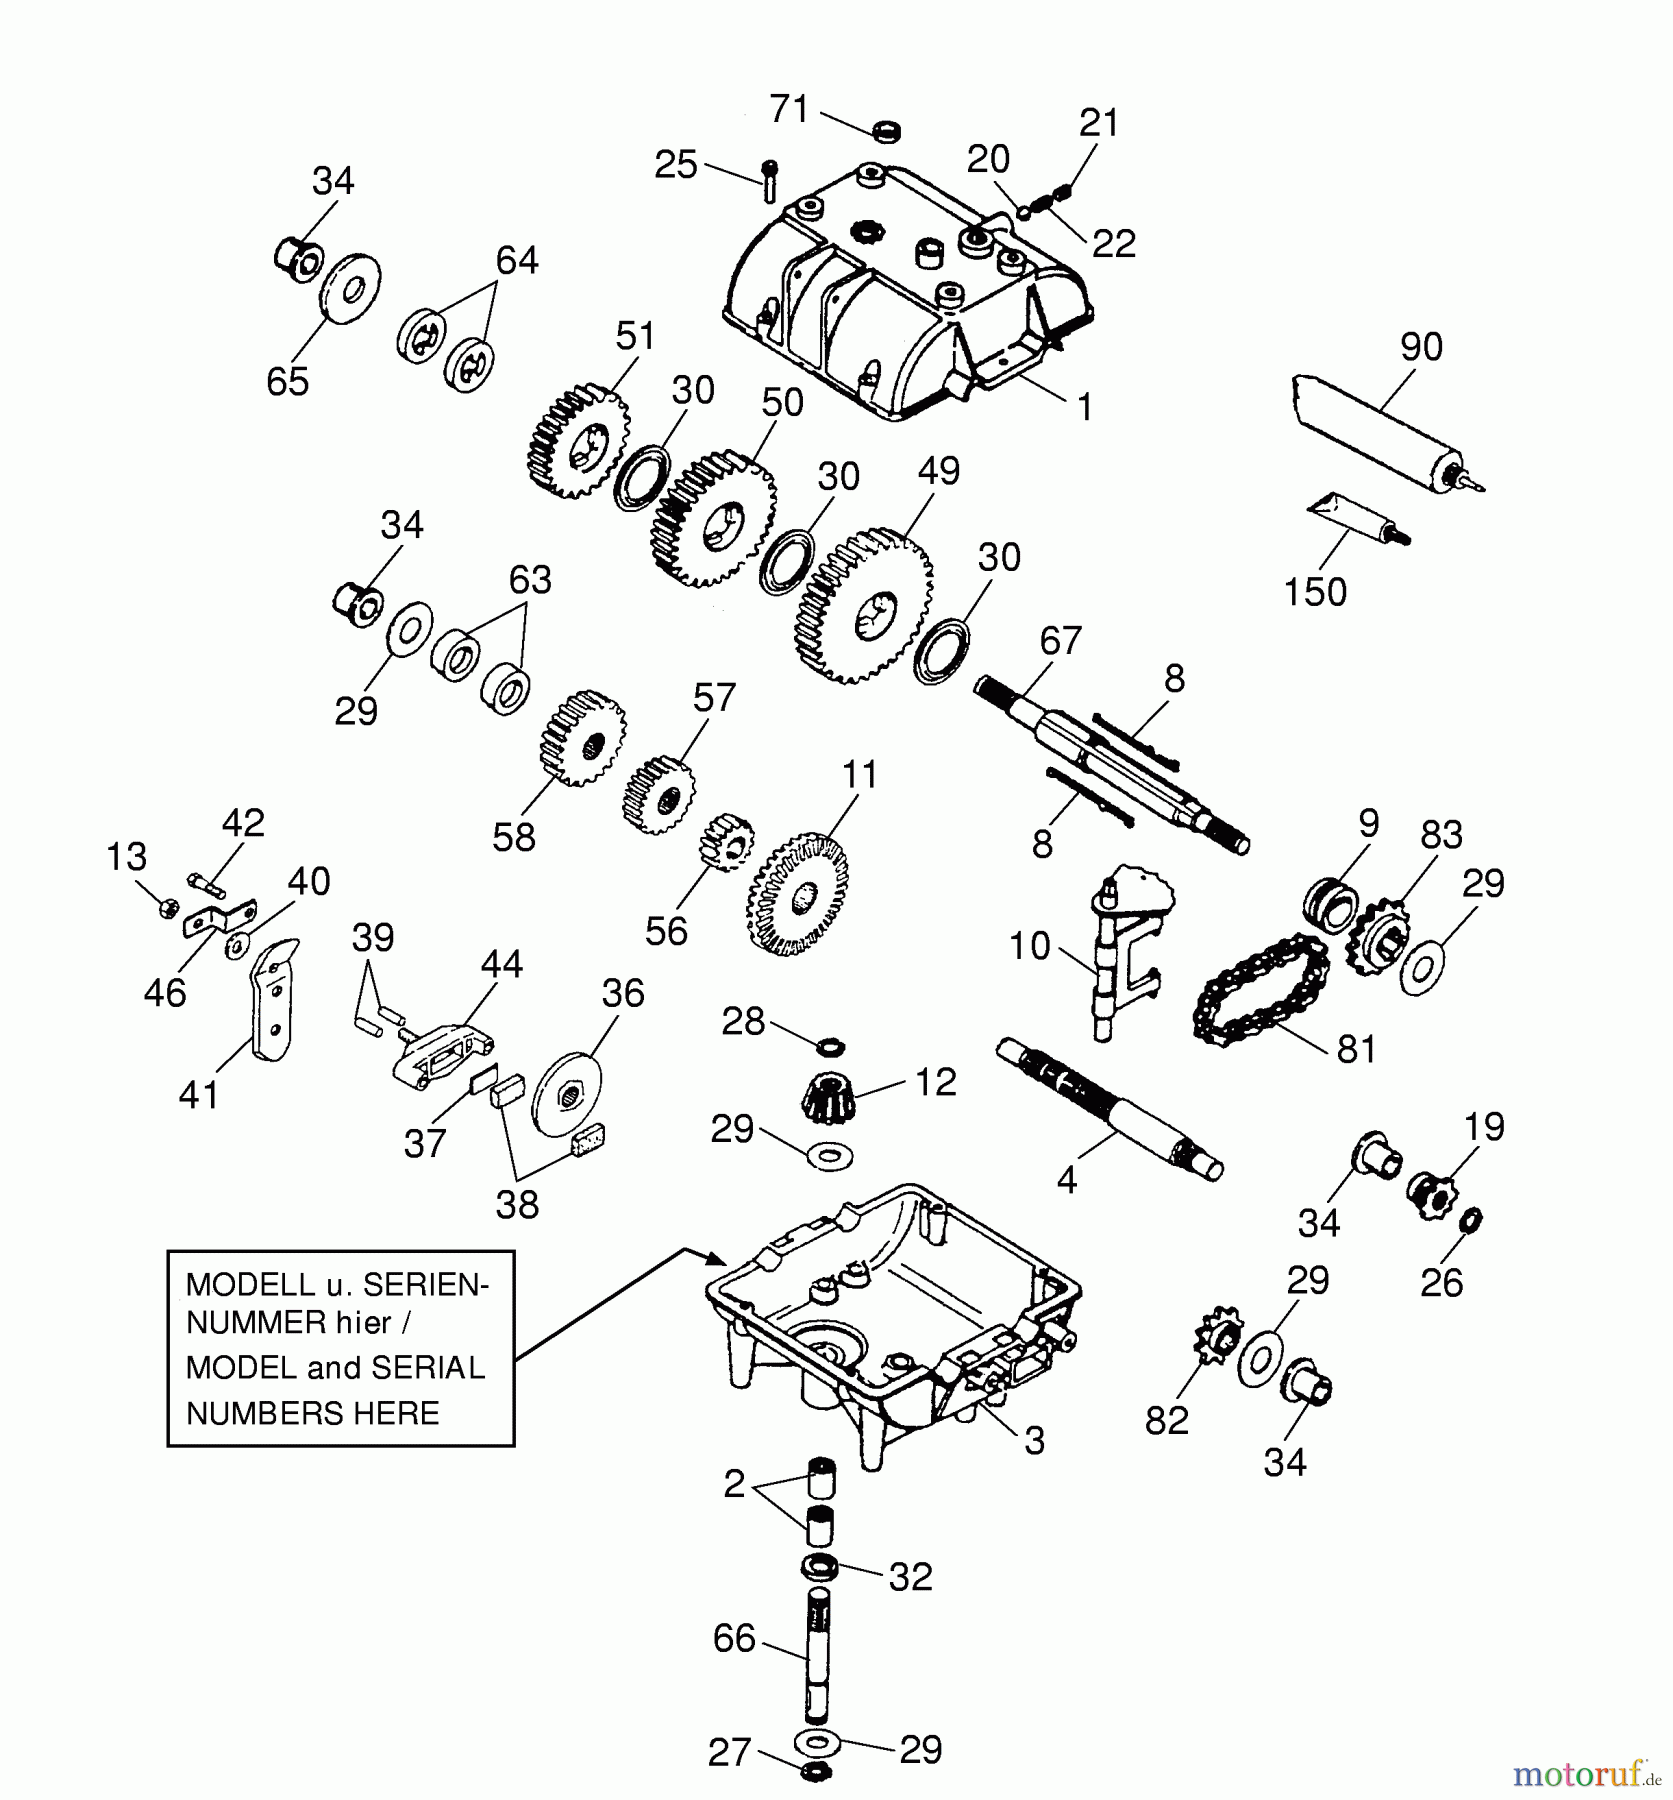  Wolf-Garten Scooter OHV 3 6995000 Serie B  (2001) Getriebe